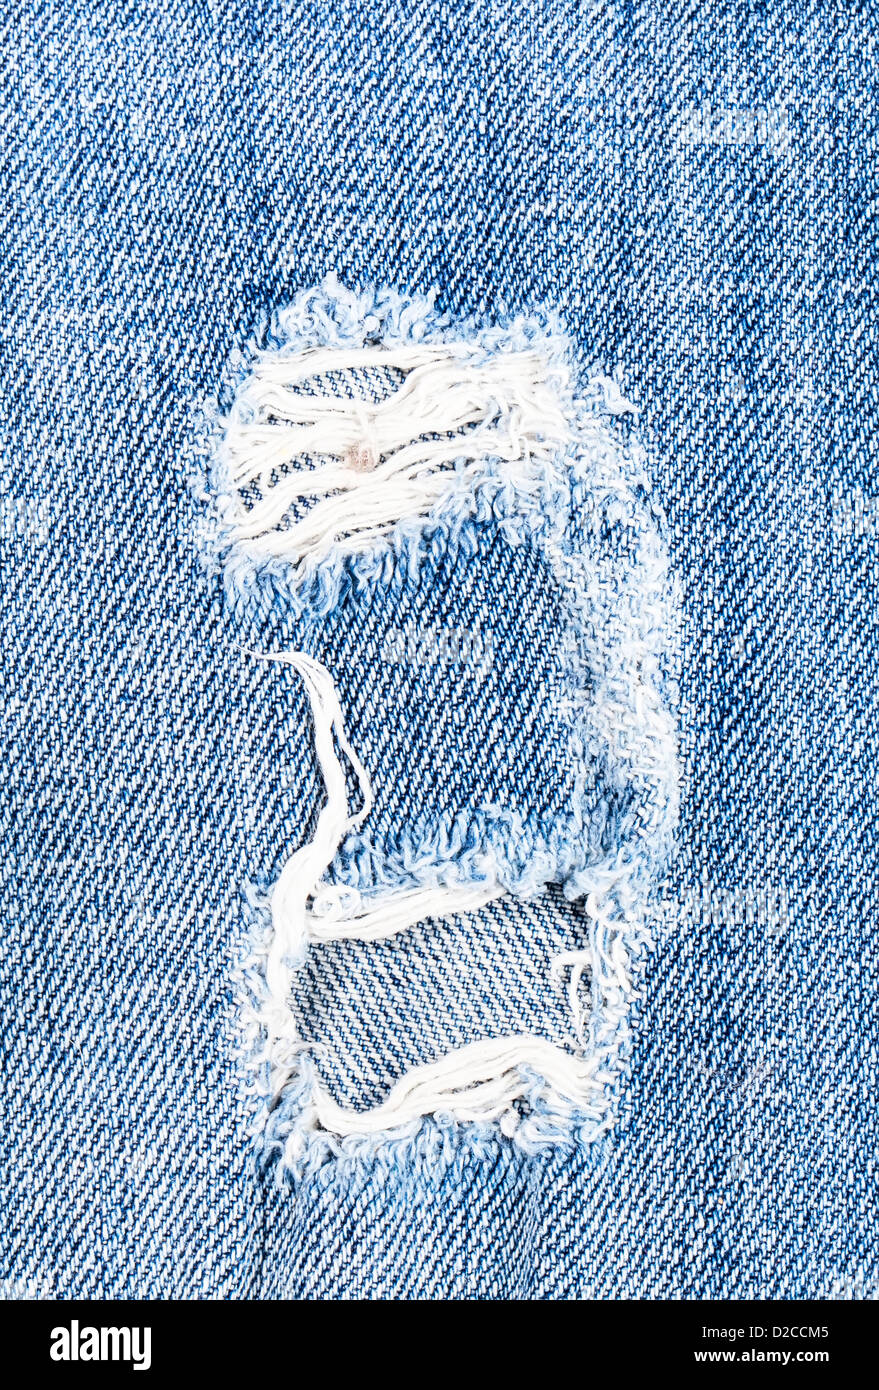 Schönes Loch in Jeans Textil Stockfoto